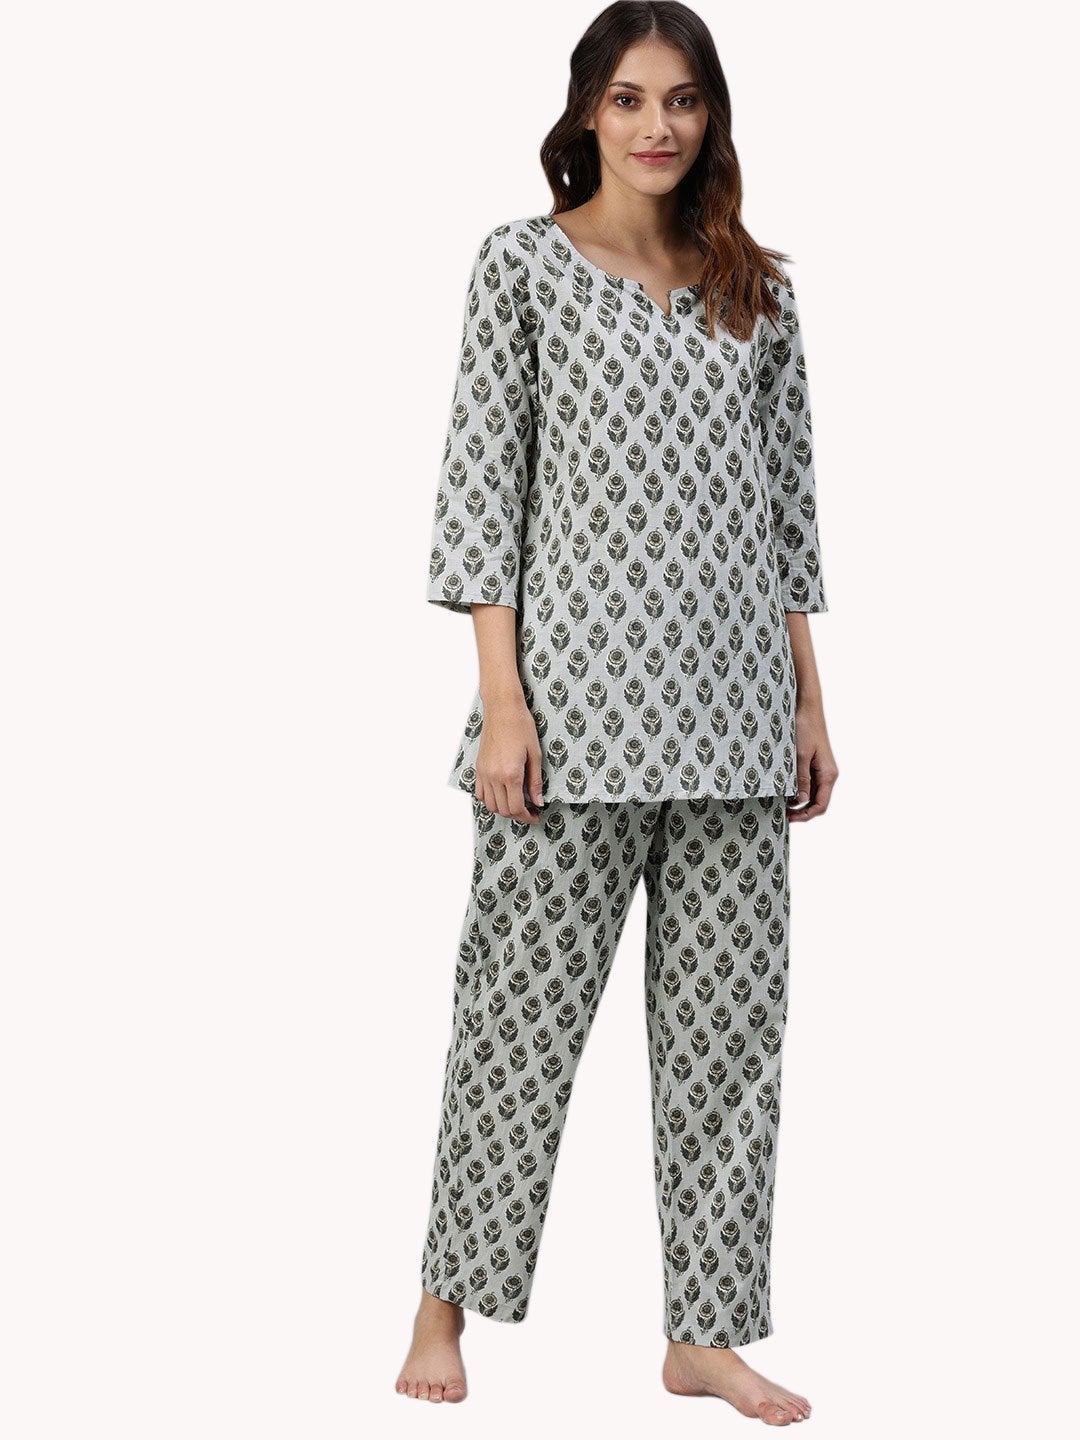 Women's Grey Color Cotton Loungewear/Nightwear  - Wahenoor